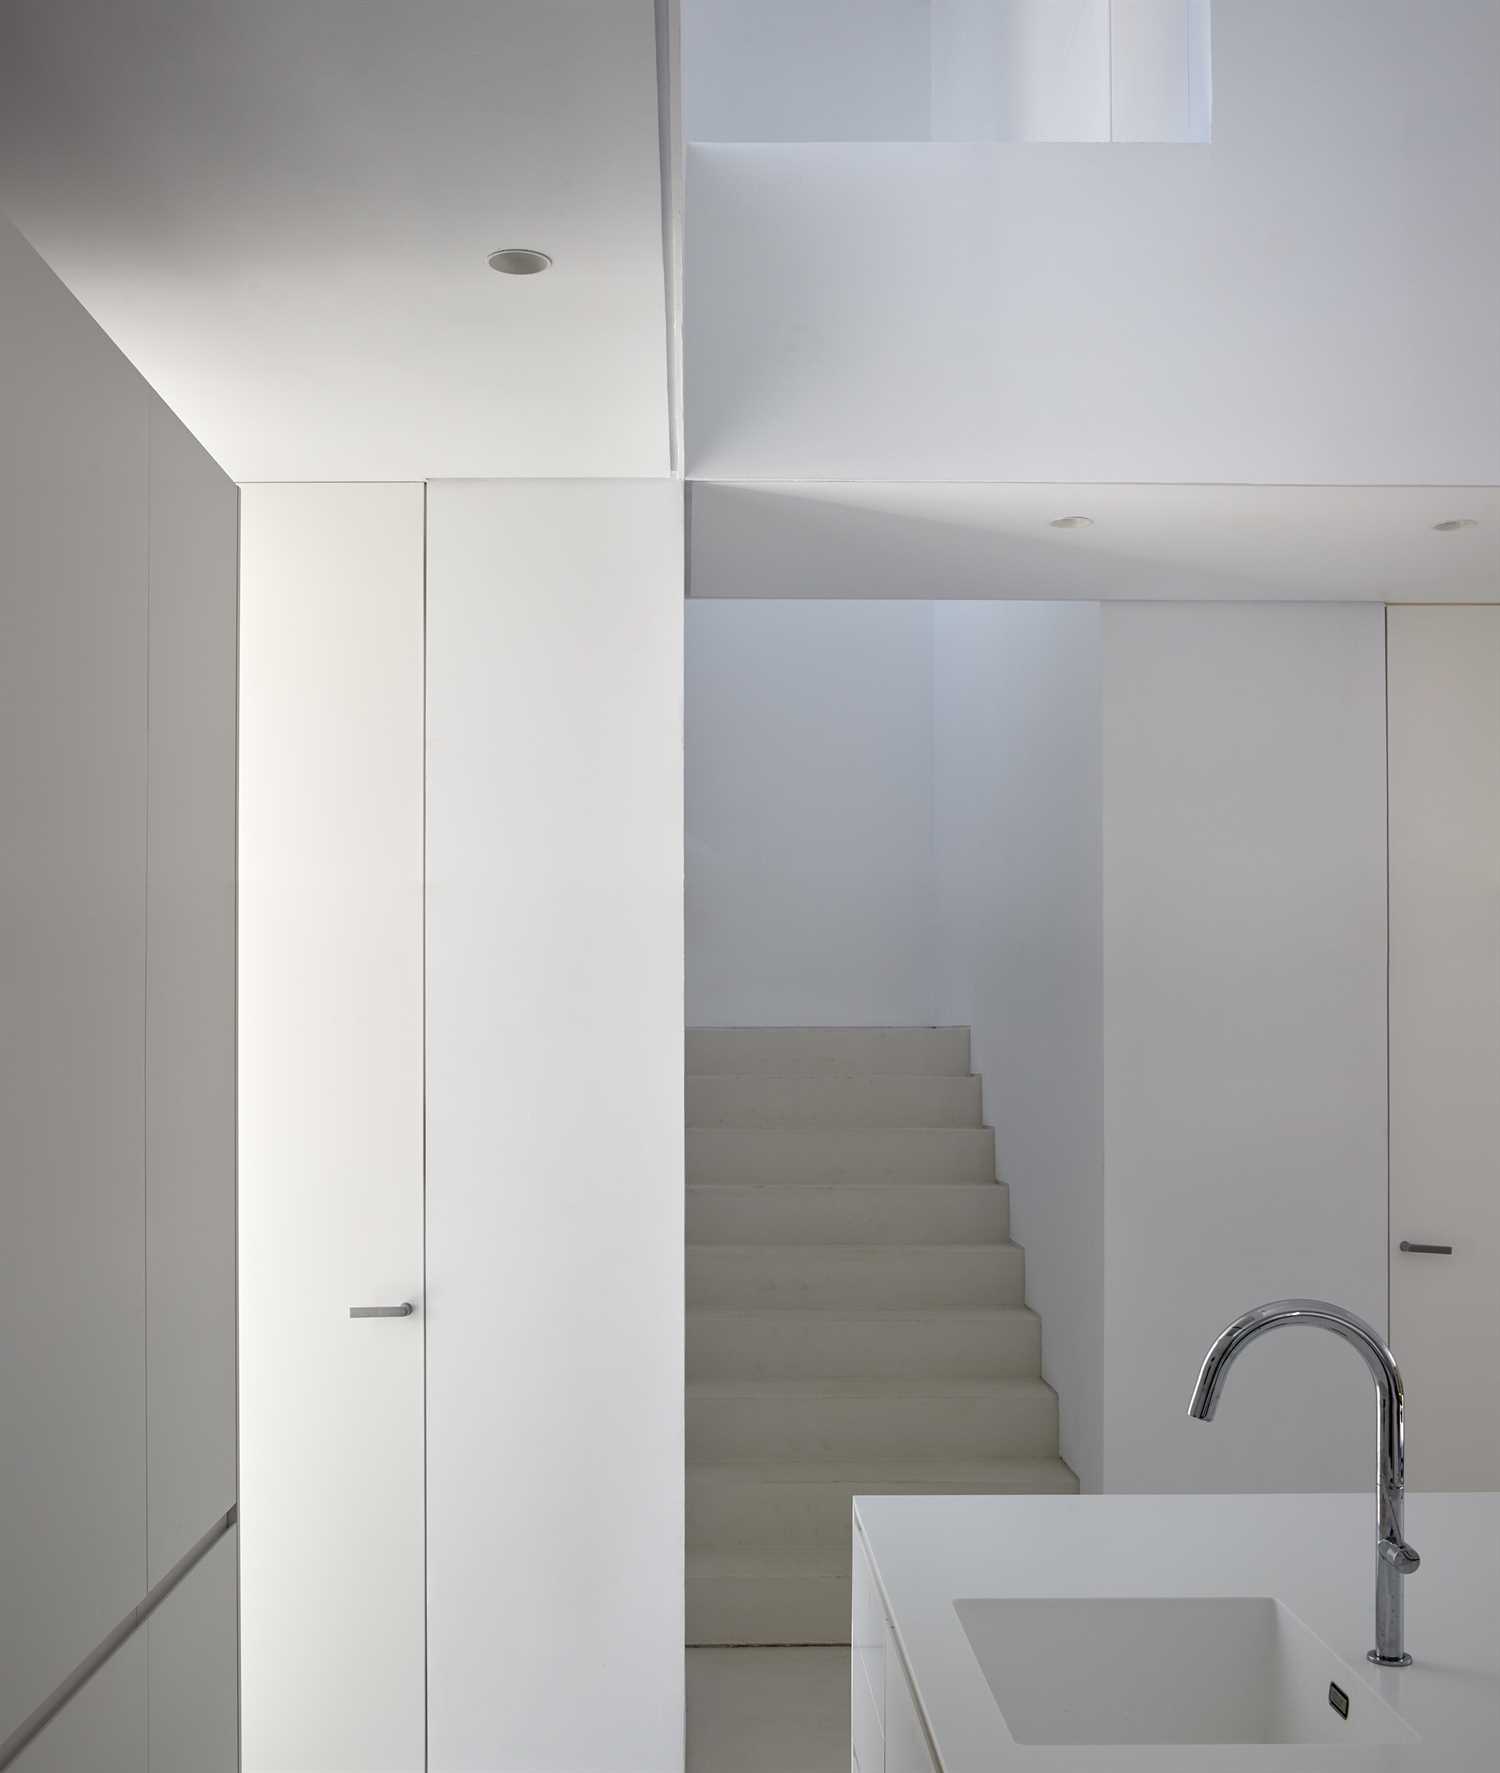 Valkoinen mikrosementti uusitun asunnon lattiaan, seiniin ja kattoon.